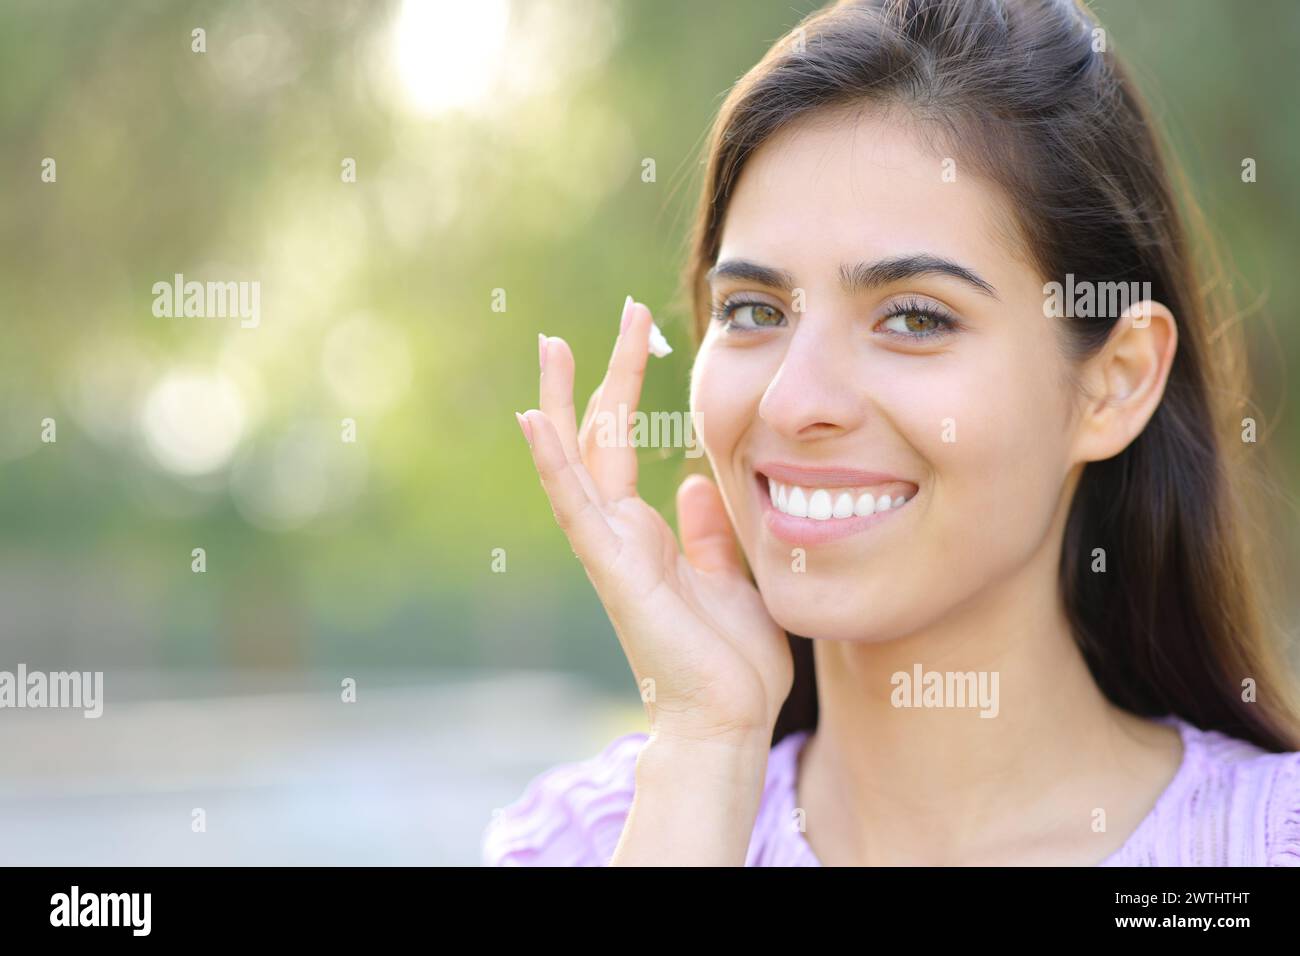 Retrato de una mujer feliz aplicando humectante mirándote en un parque Foto de stock